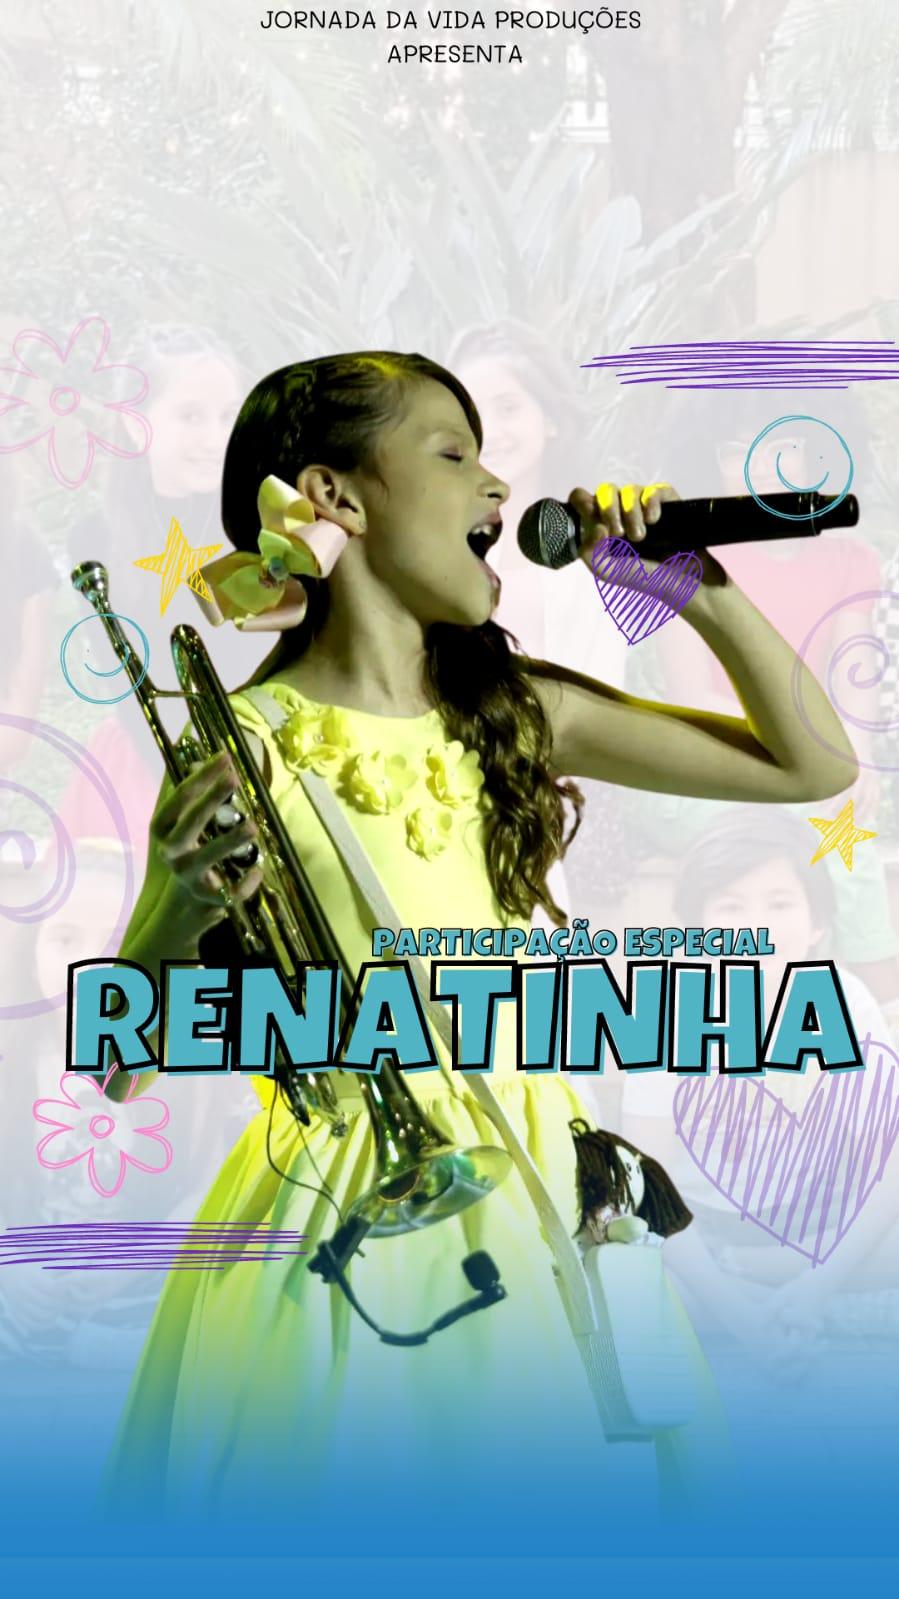 Renatinha Santos faz participação especial em série “Jornada da Vida”